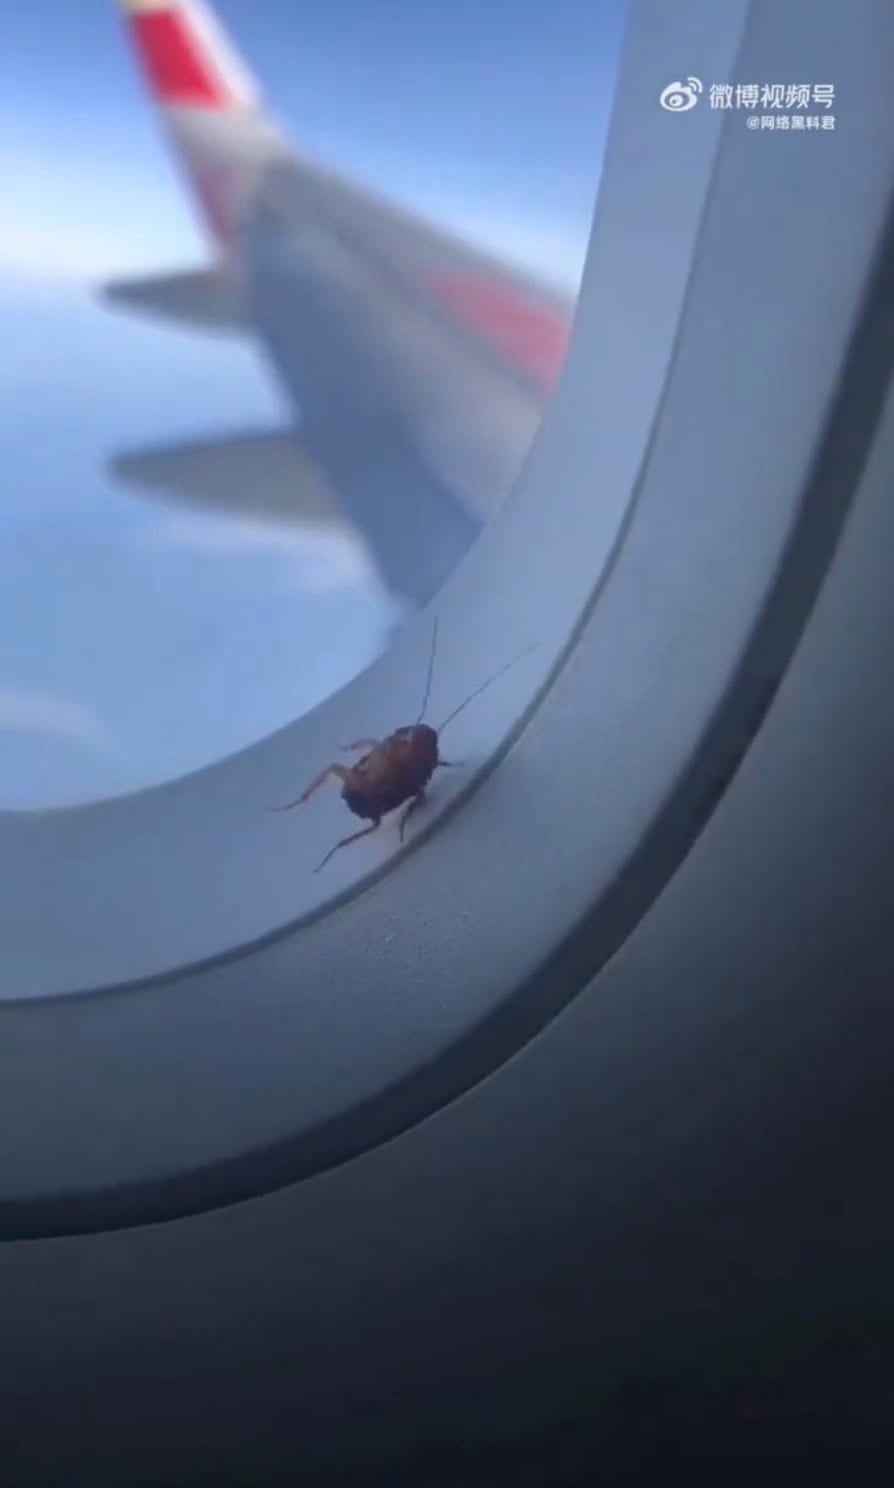 คลิปแมลงสาบเกาะหน้าต่างเครื่องบินขณะอยู่กลางอากาศในประเทศจีน